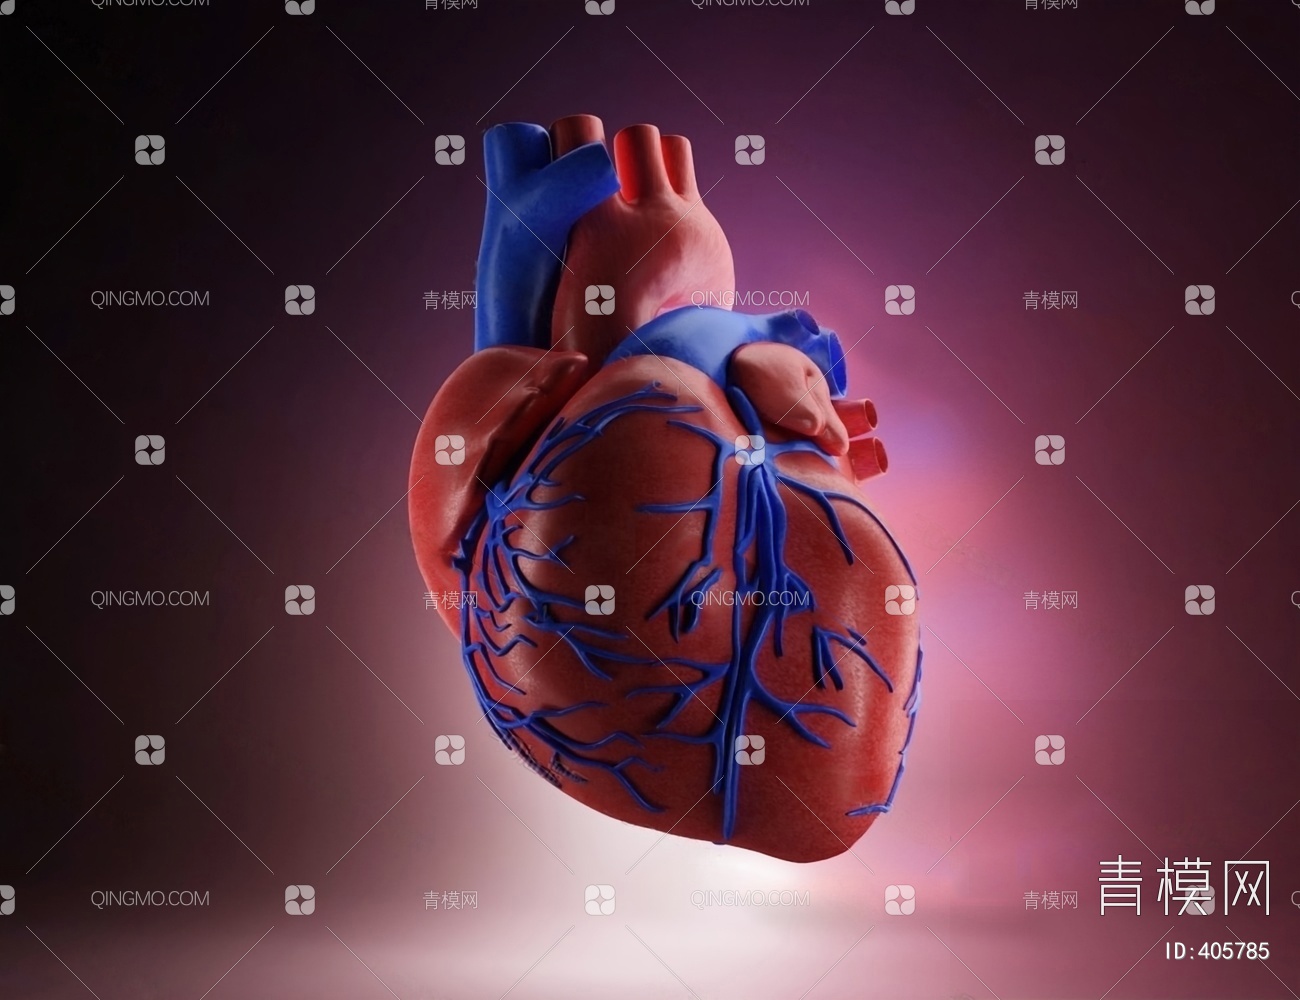 القلب الوعائي, وعاء دموي, جسم الإنسان, قلب PNG وملف PSD للتحميل مجانا